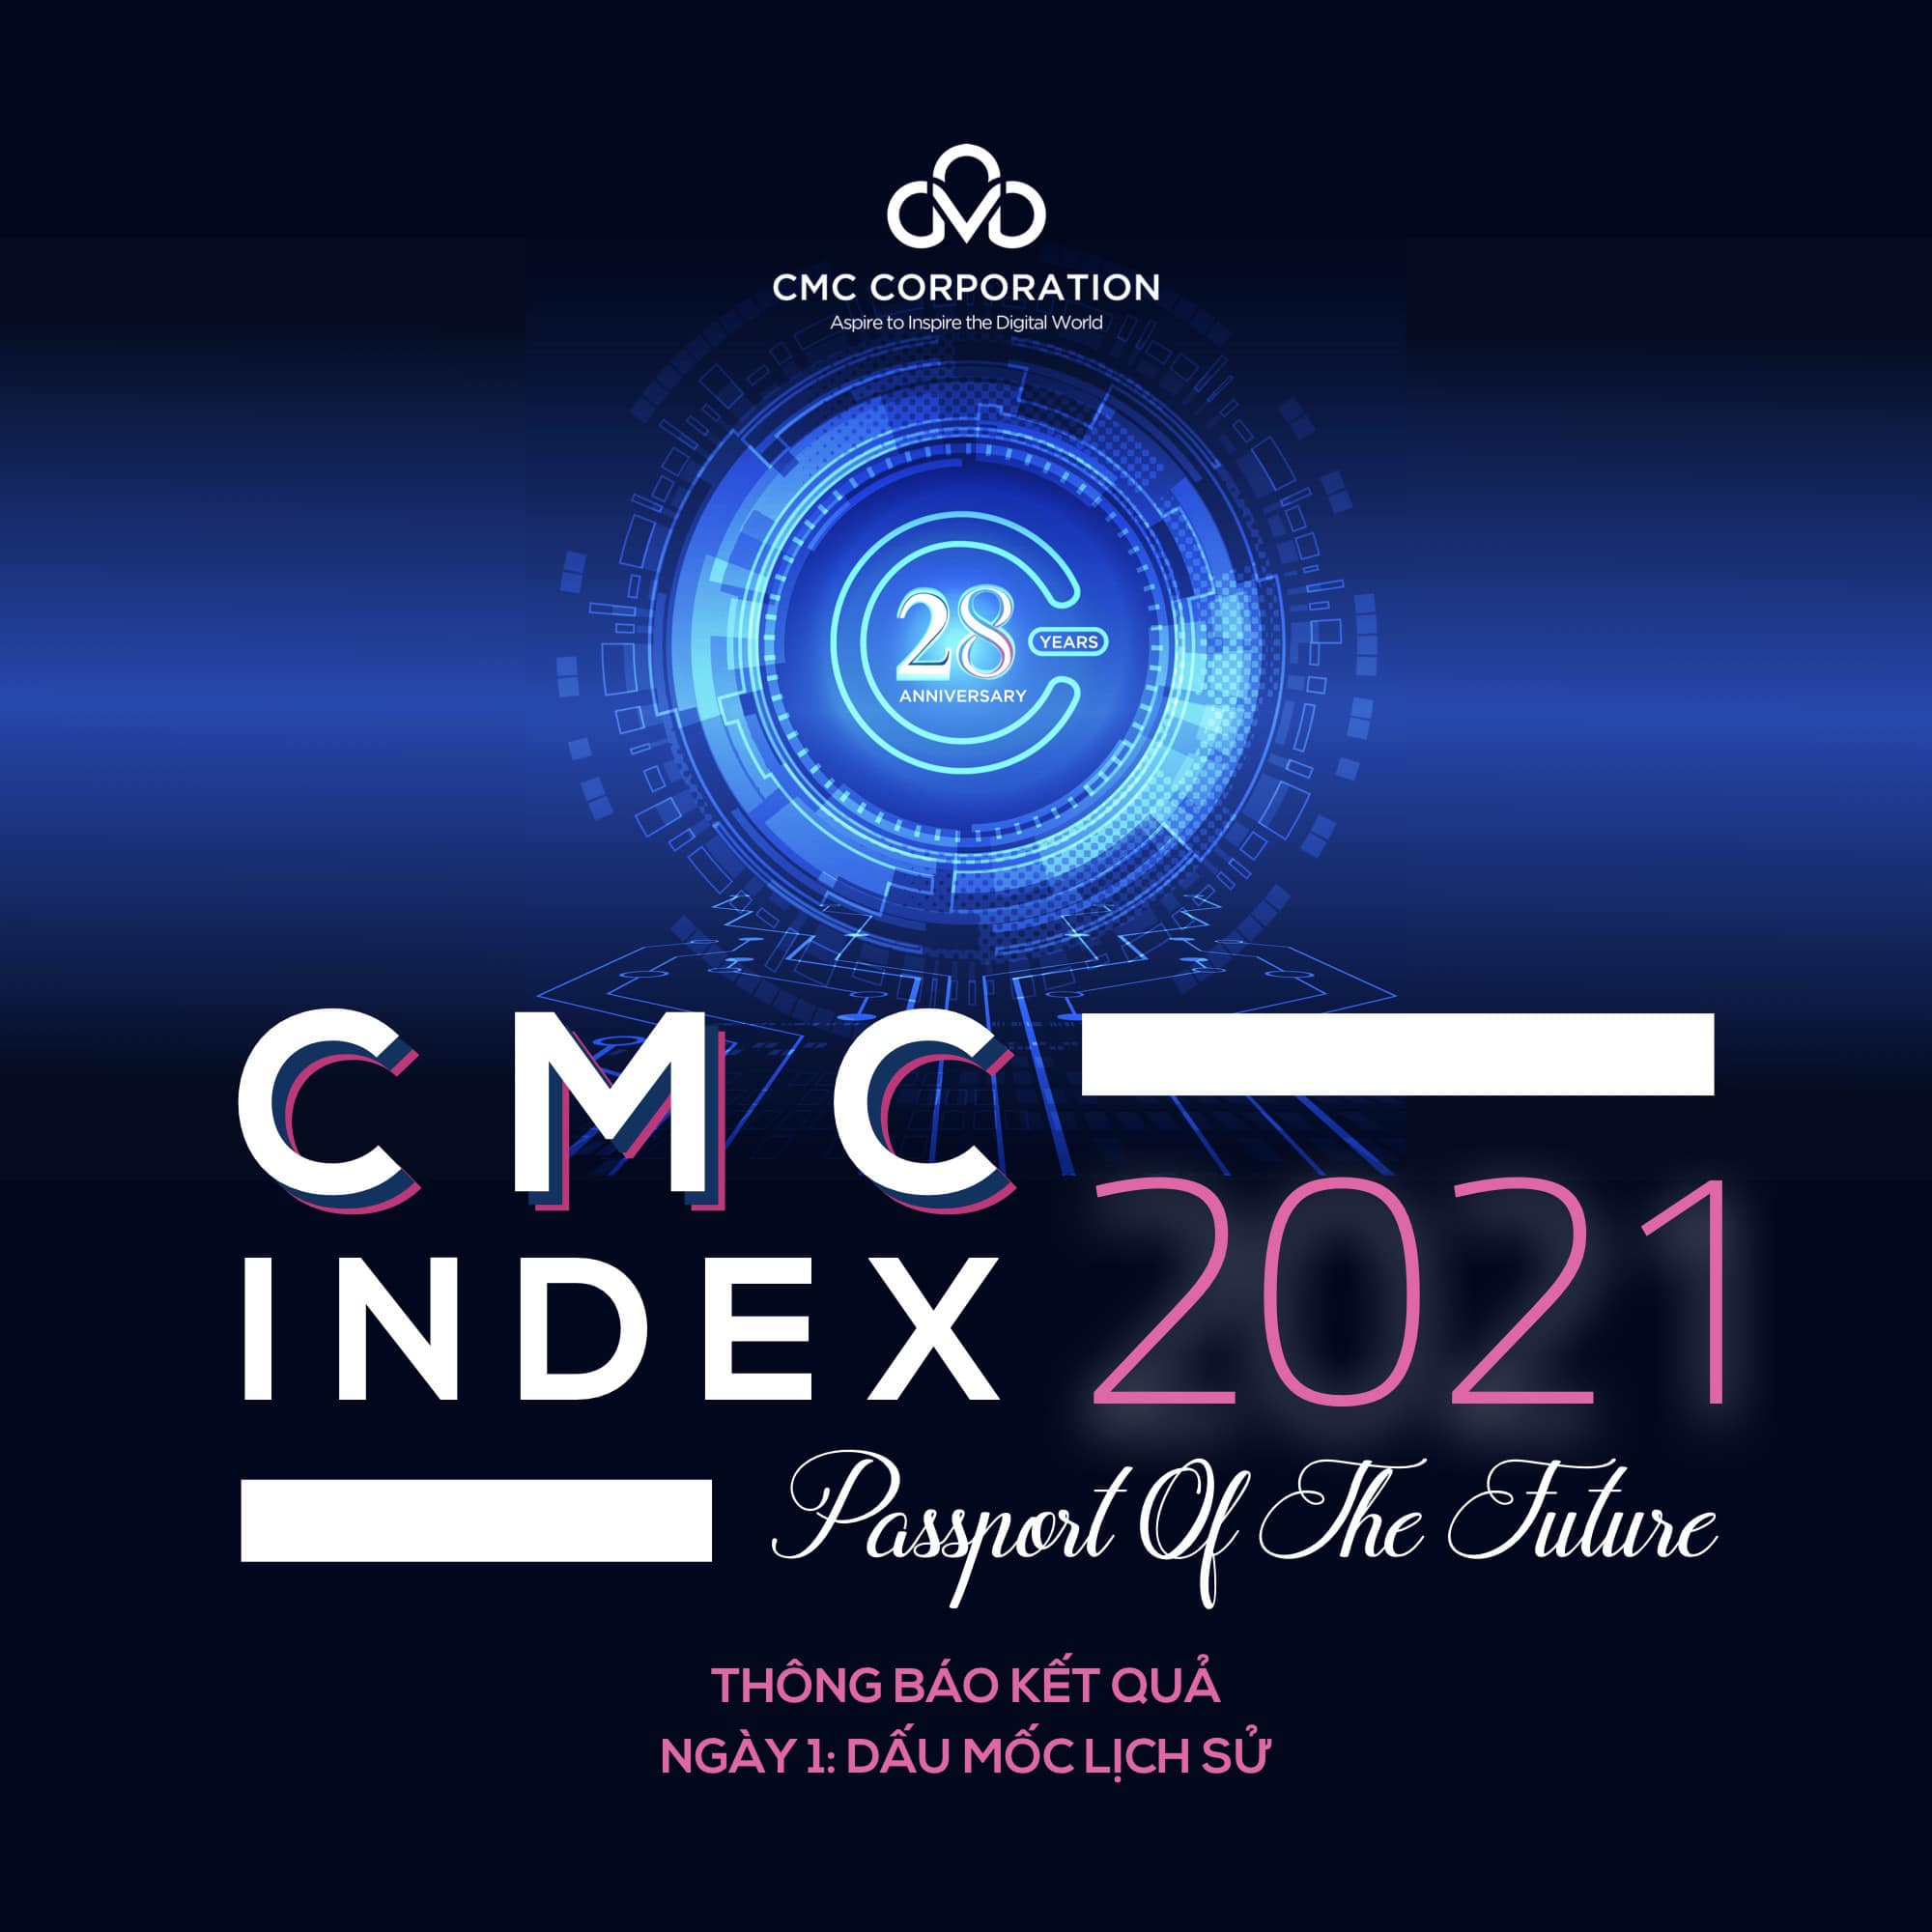 CMCIndex2021　同社の沿革についてのクイズコンテストを開催